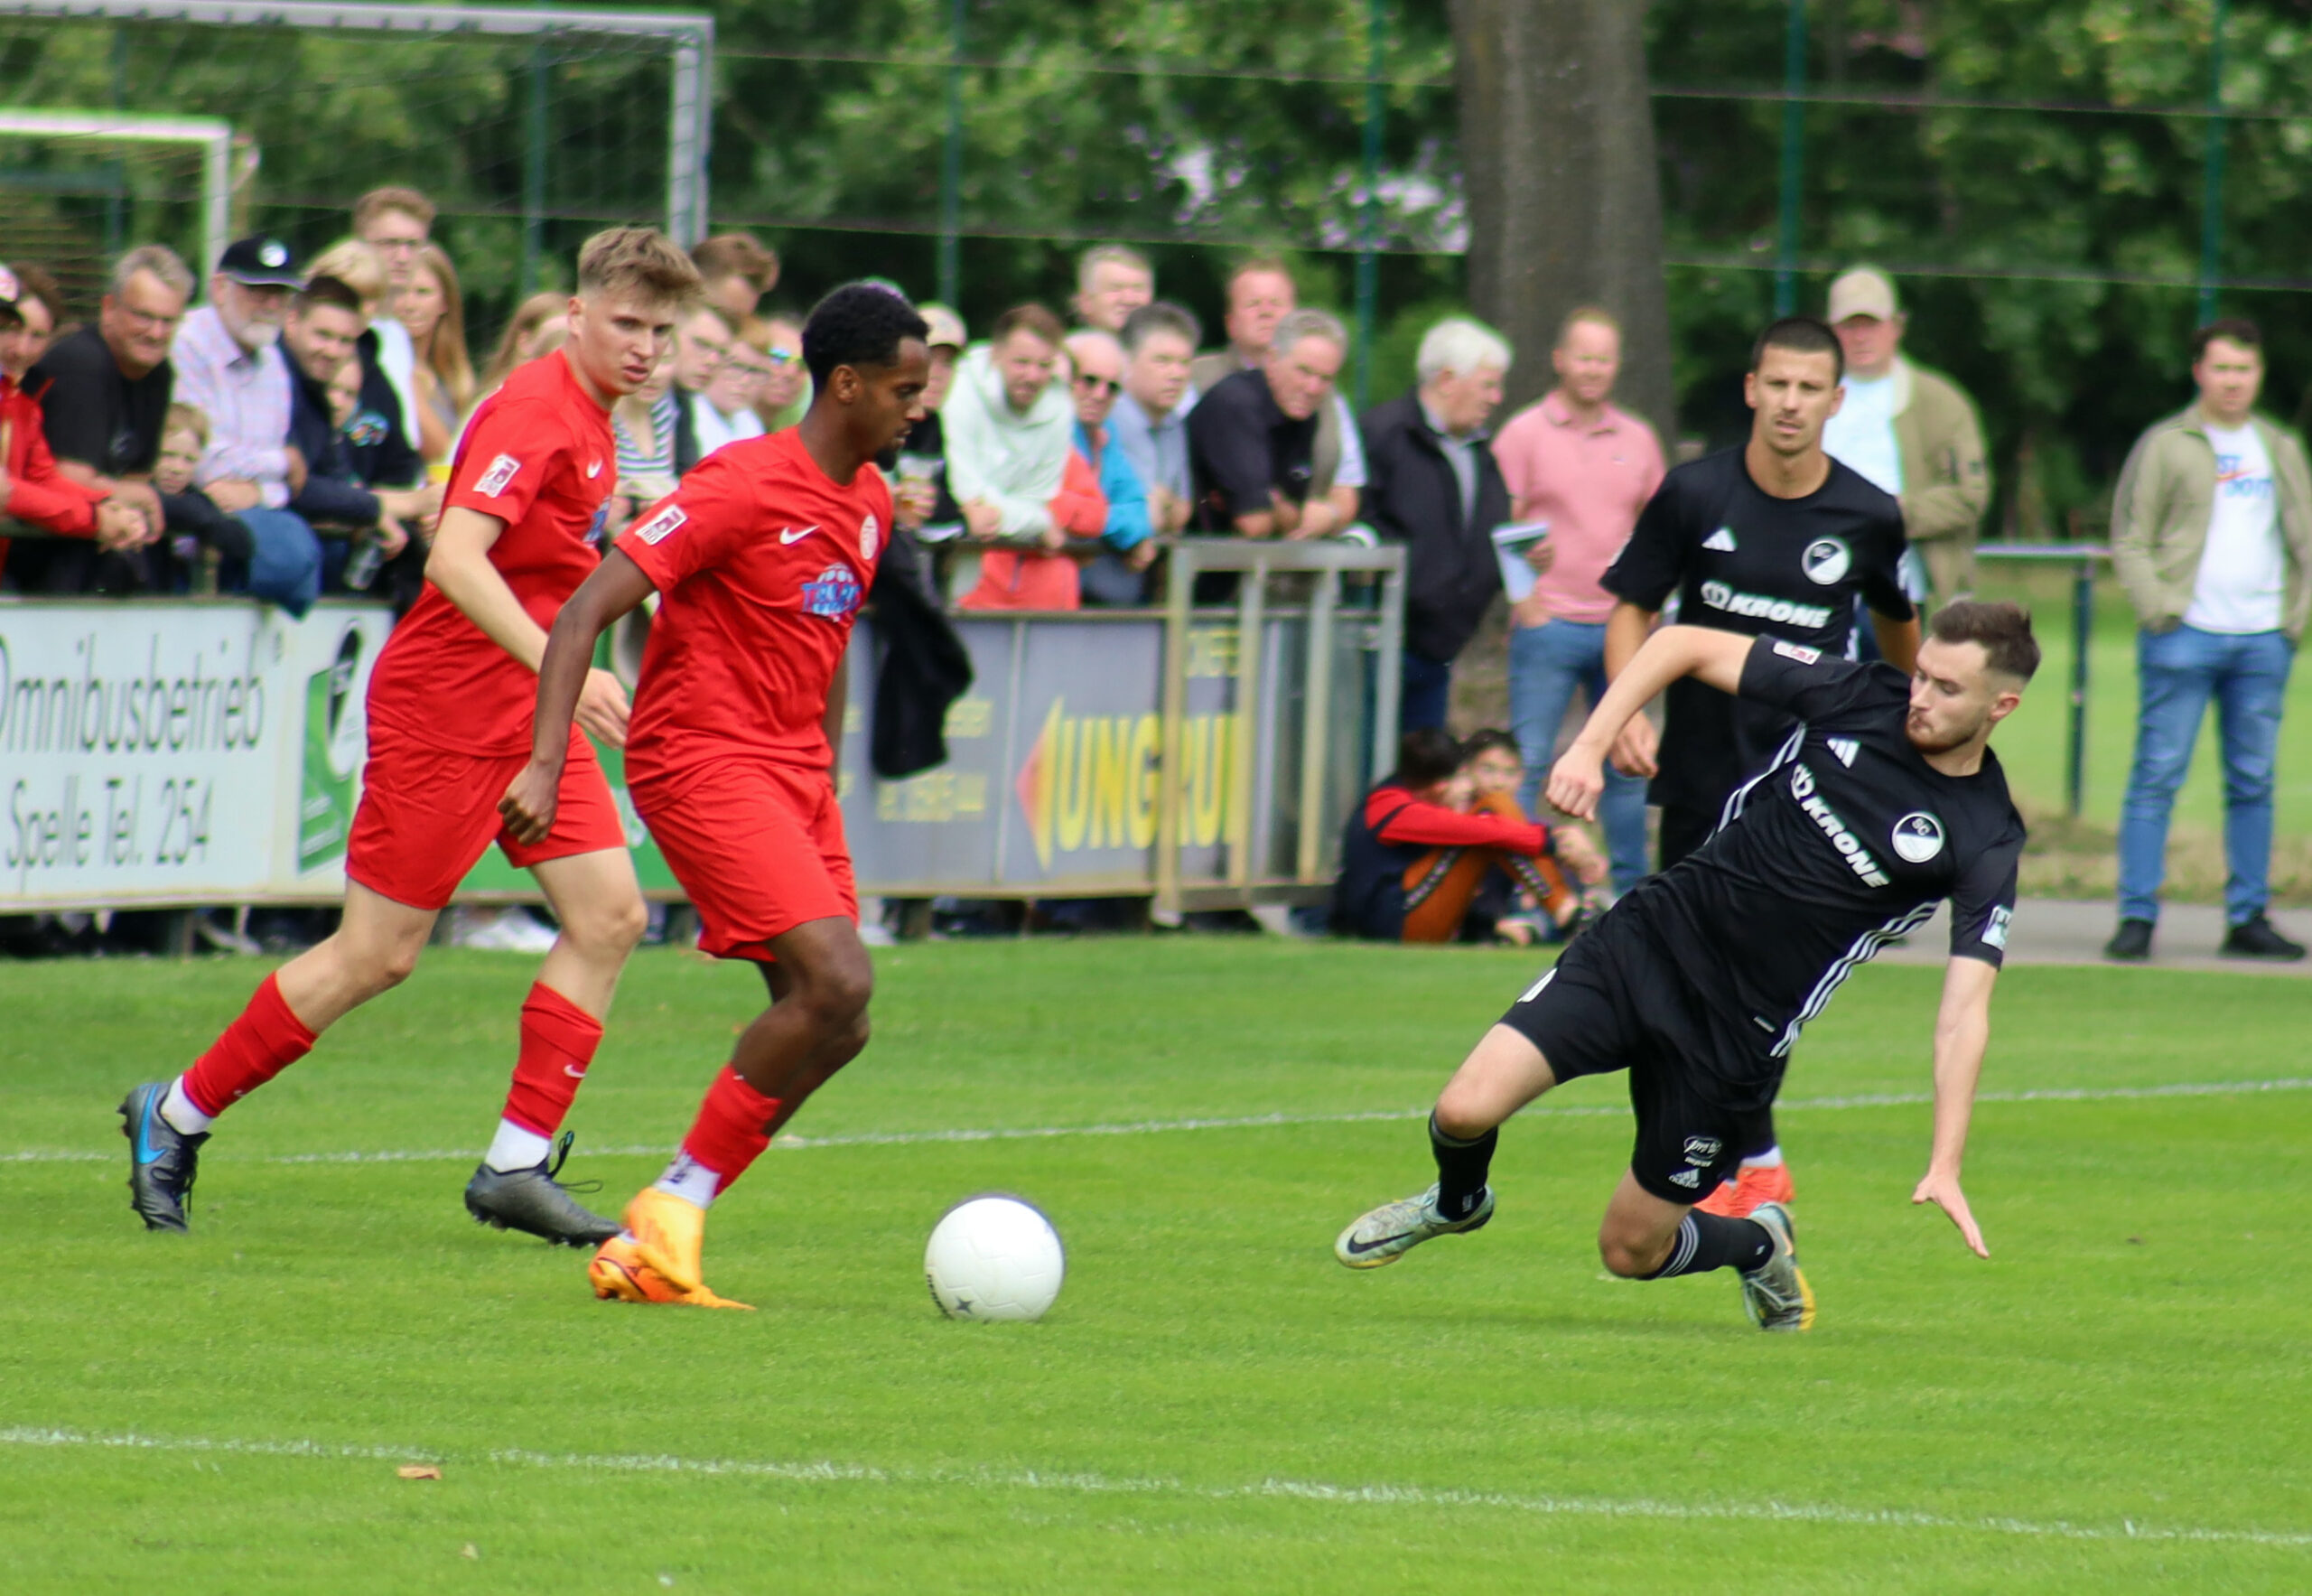 Das Hinspiel gewann der SC Spelle-Venhaus mit 3:2 gegen Eimsbütteler TV. Foto: SC Spelle-Venhaus